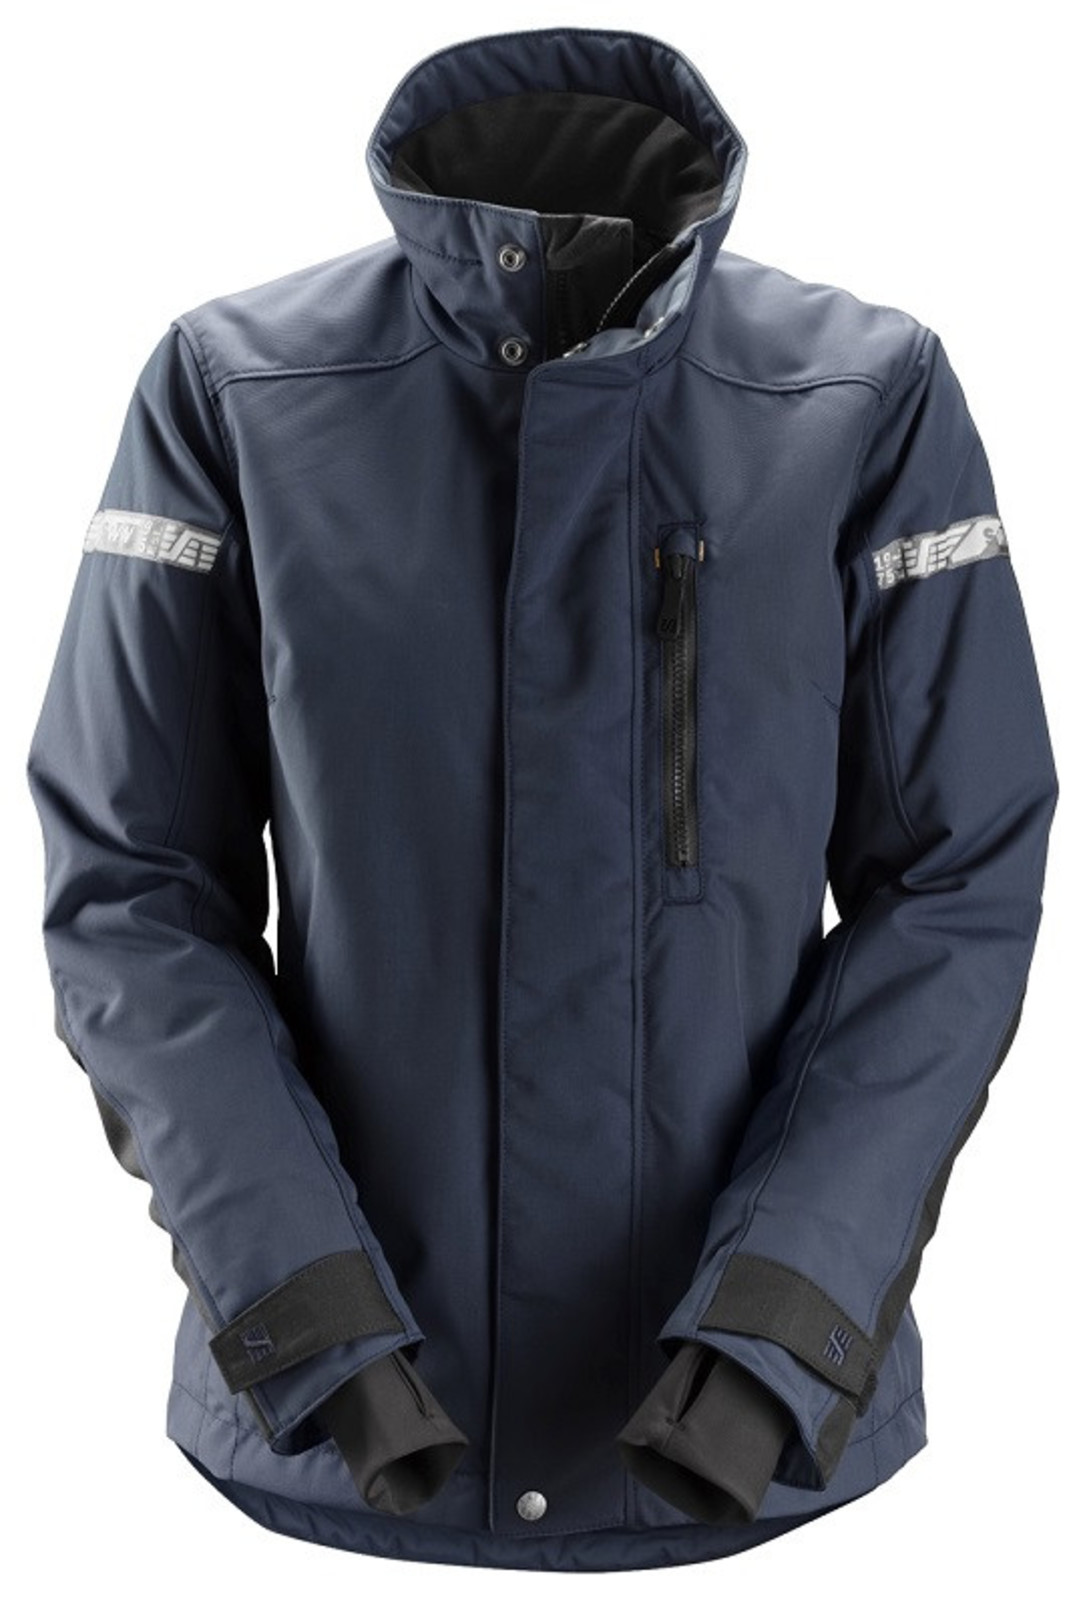 Dámska zimná bunda Snickers® AllroundWork 37.5® - veľkosť: XS, farba: navy